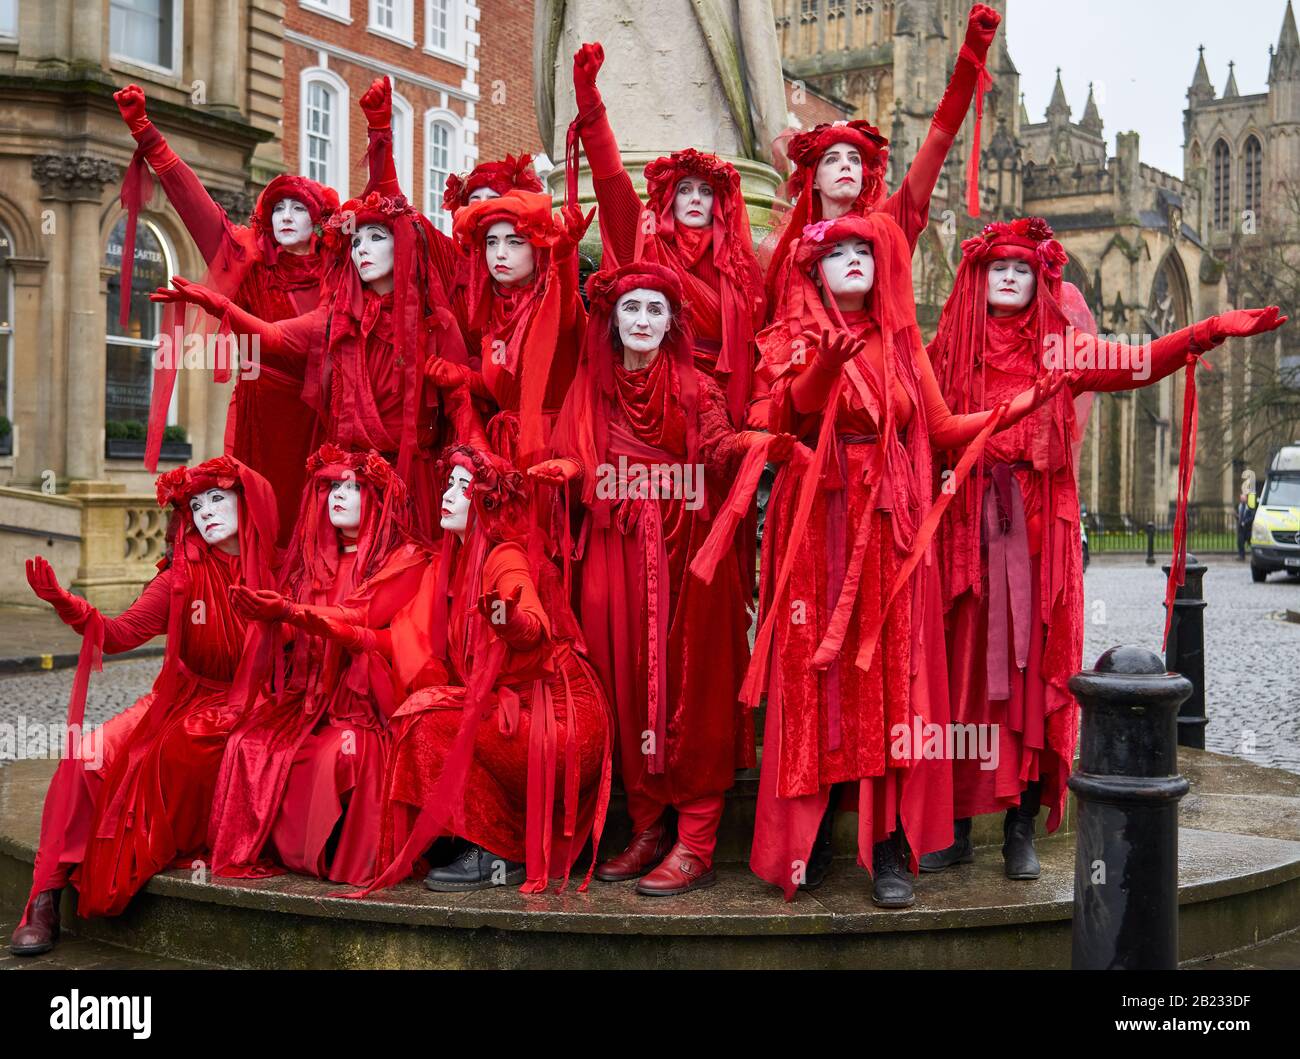 La Rebelión de la brigada roja De Extinción exhibió sus posturas sorprendentes en protesta pacífica apoyando la acción sobre el cambio climático - Bristol UK Foto de stock